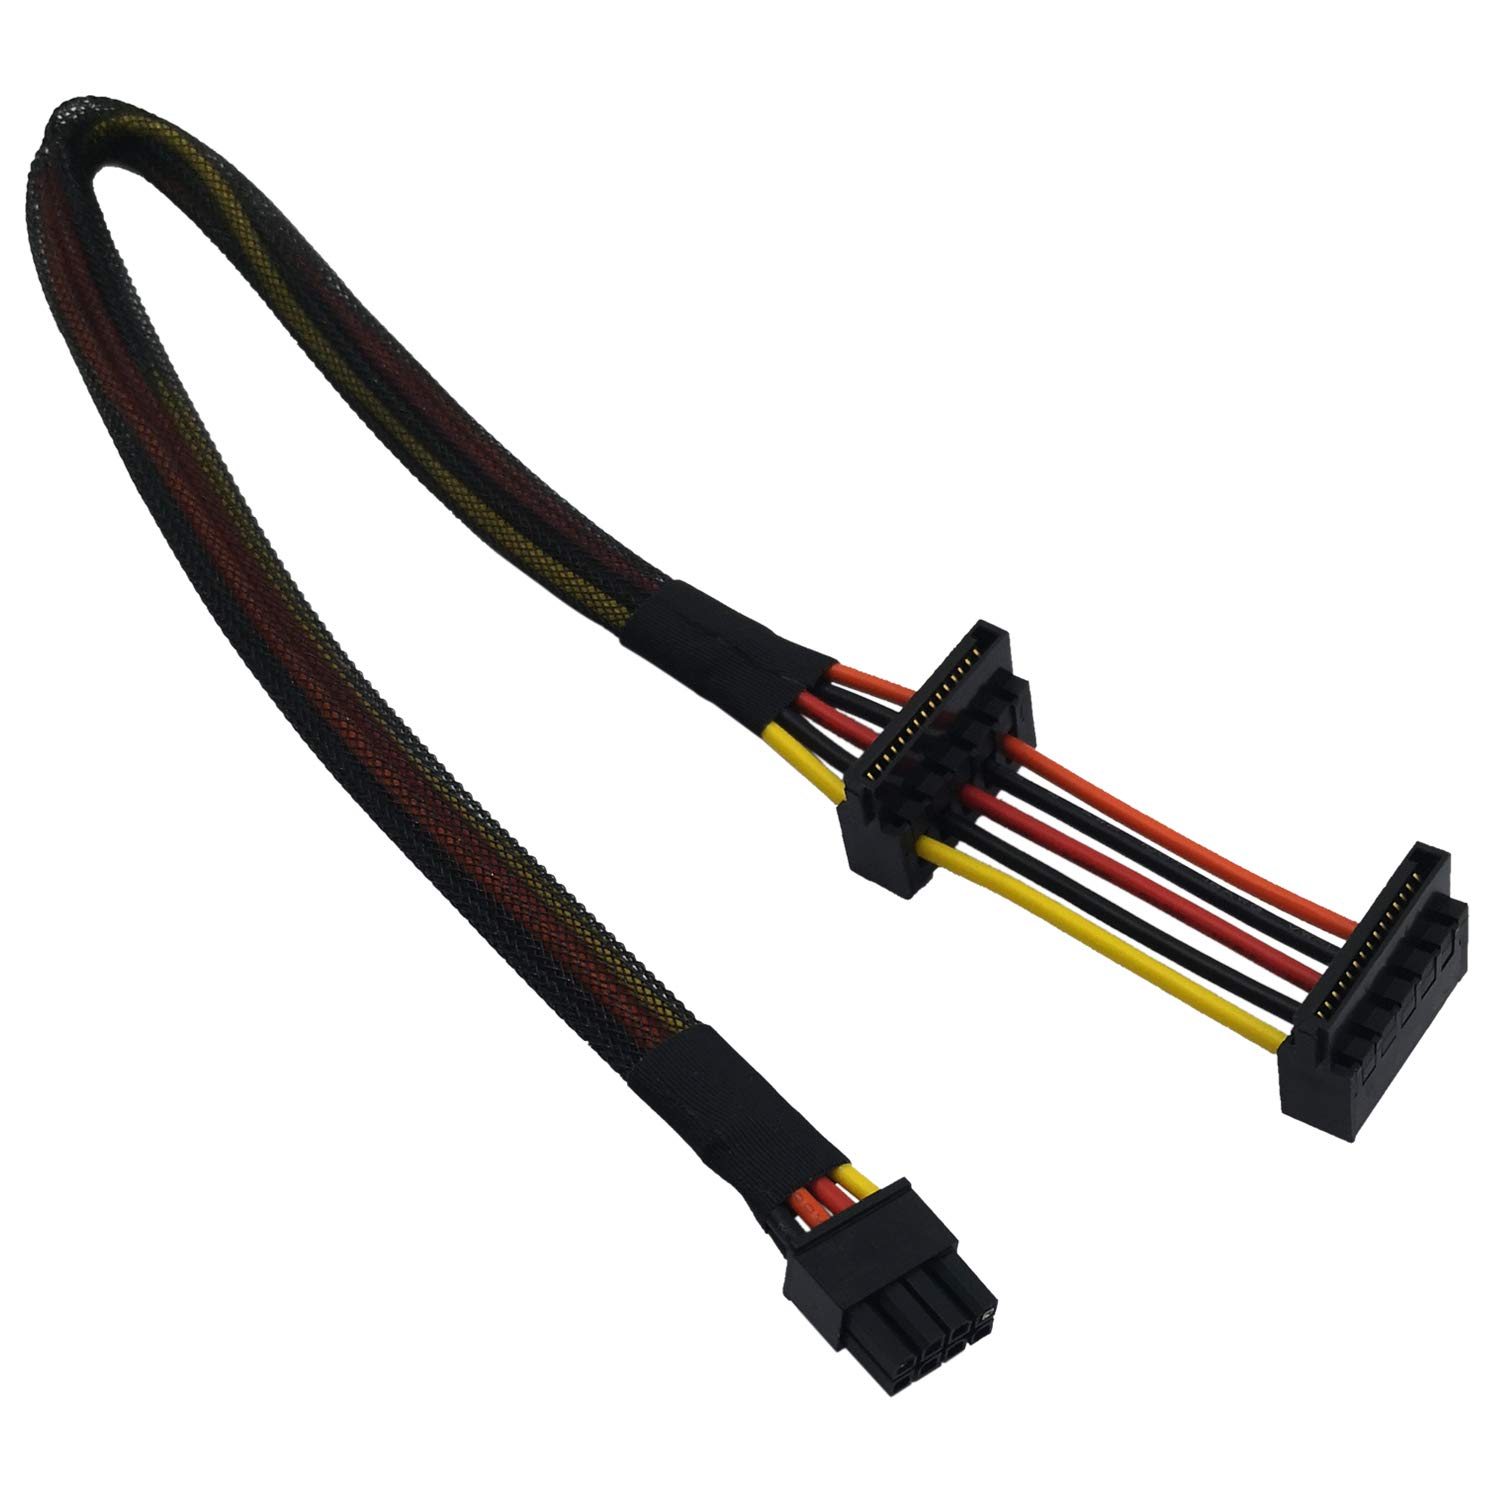 2X 4-Pin IDE Molex to 15-Pin Serial ATA SATA Hard Drive Power Adapter Cable JBCA 